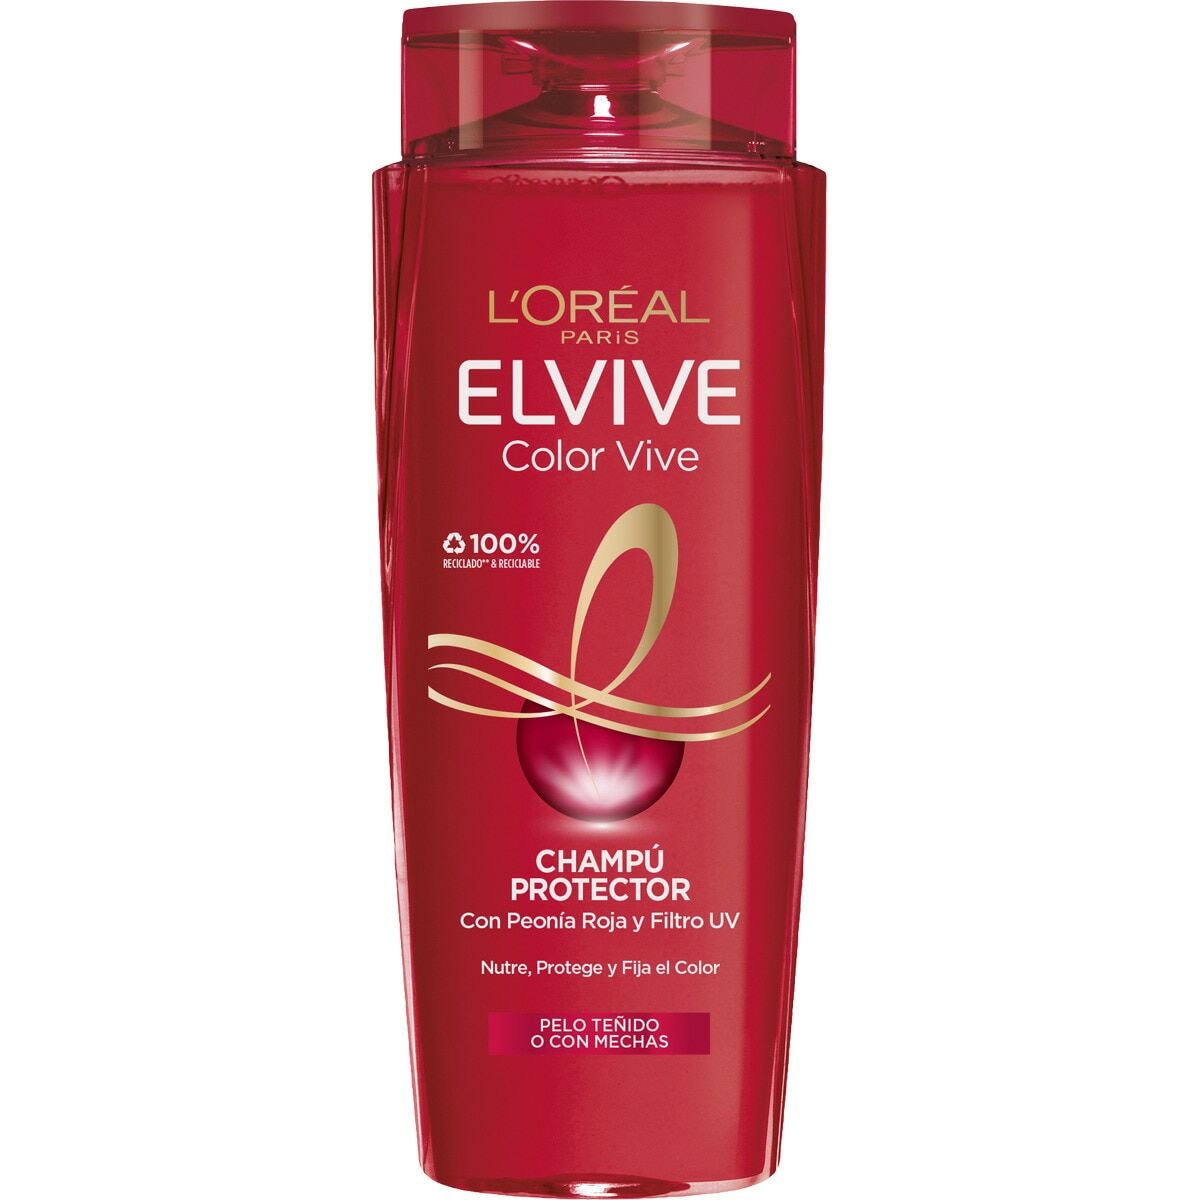 Șampon L'Oreal Make Up Elvive Color Vive 700 ml